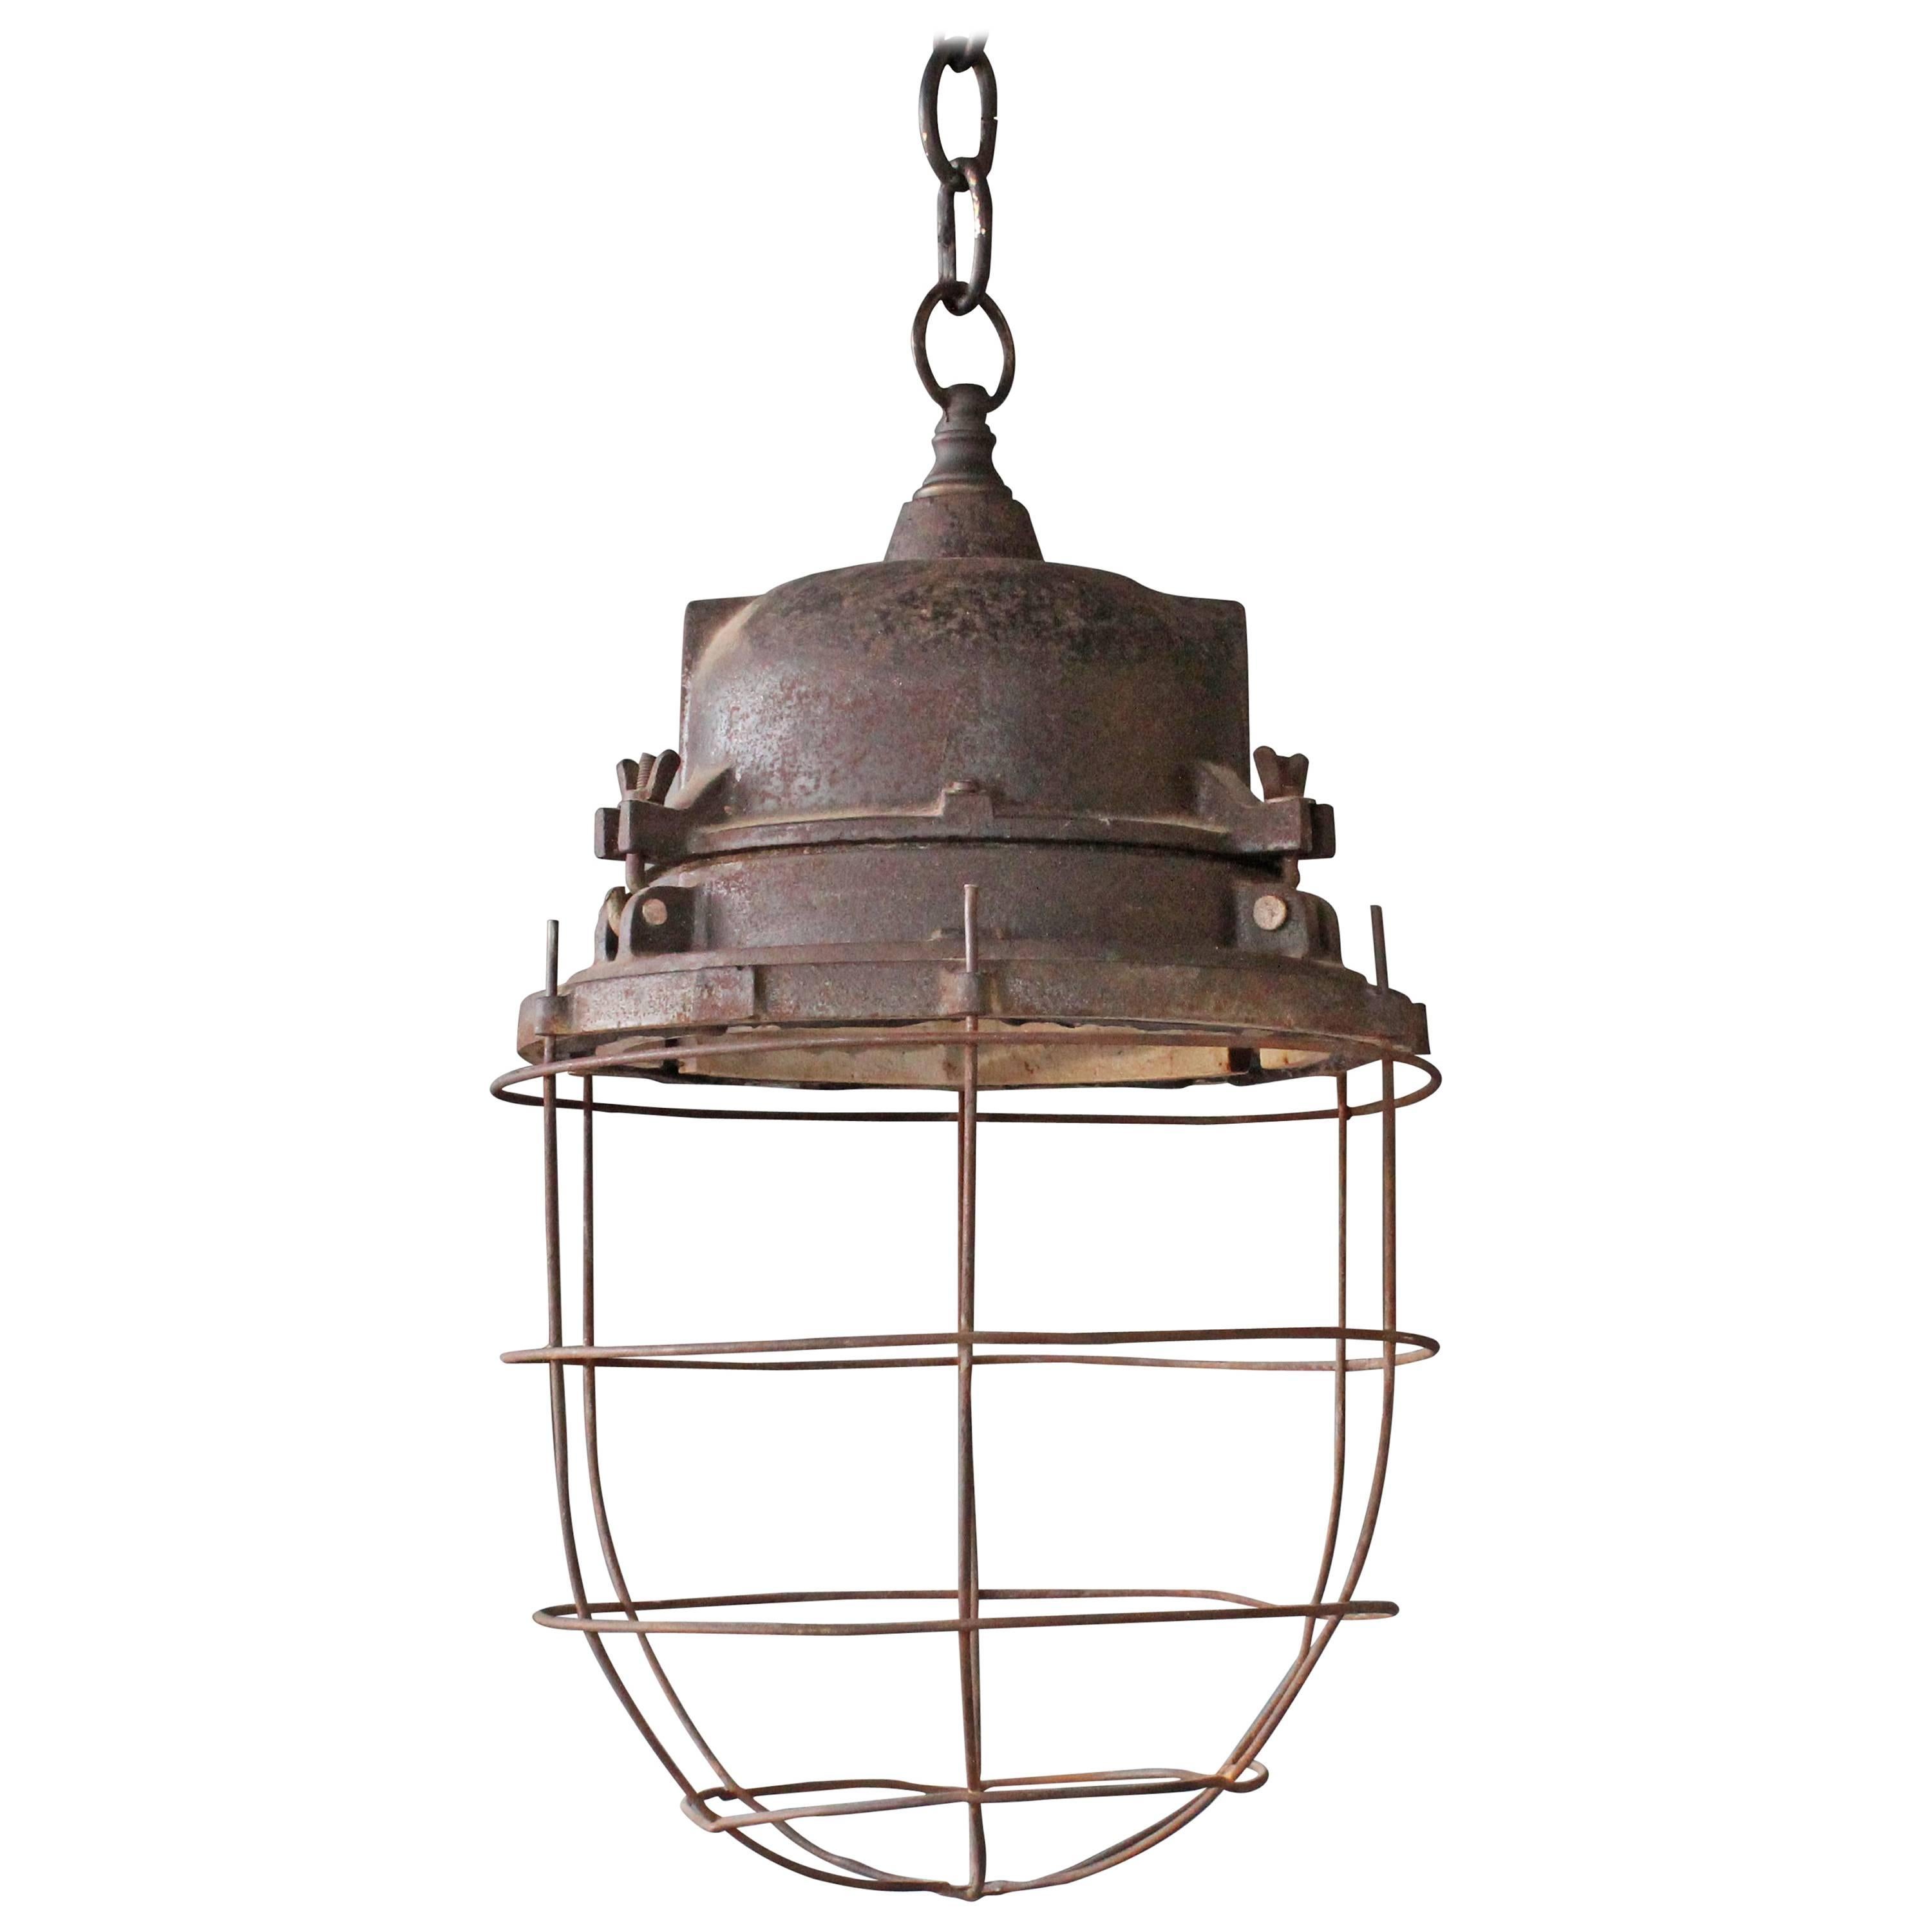 Vintage Industrial Caged Hanging Light